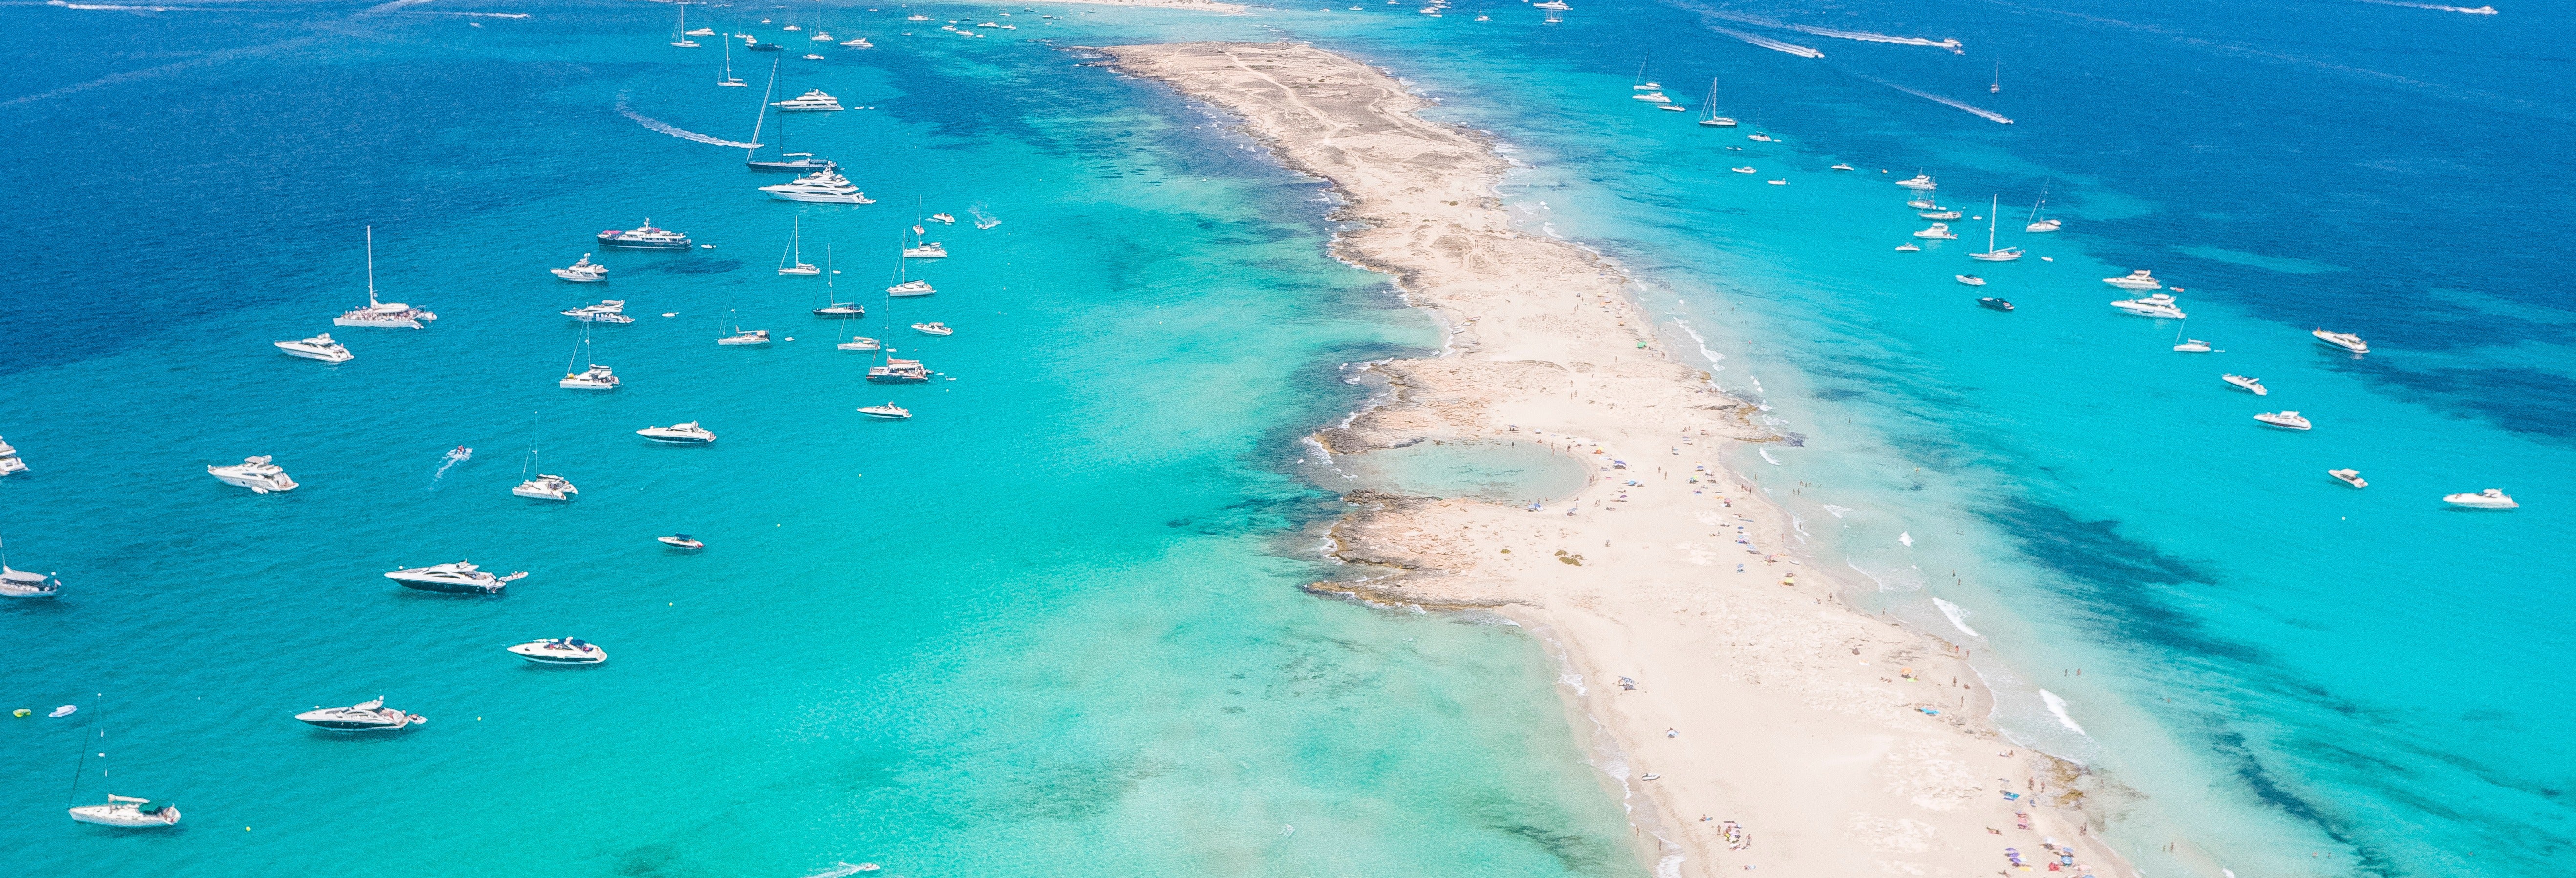 Excursion à Formentera, Espalmador et Ses Illetes depuis Playa d'en Bossa